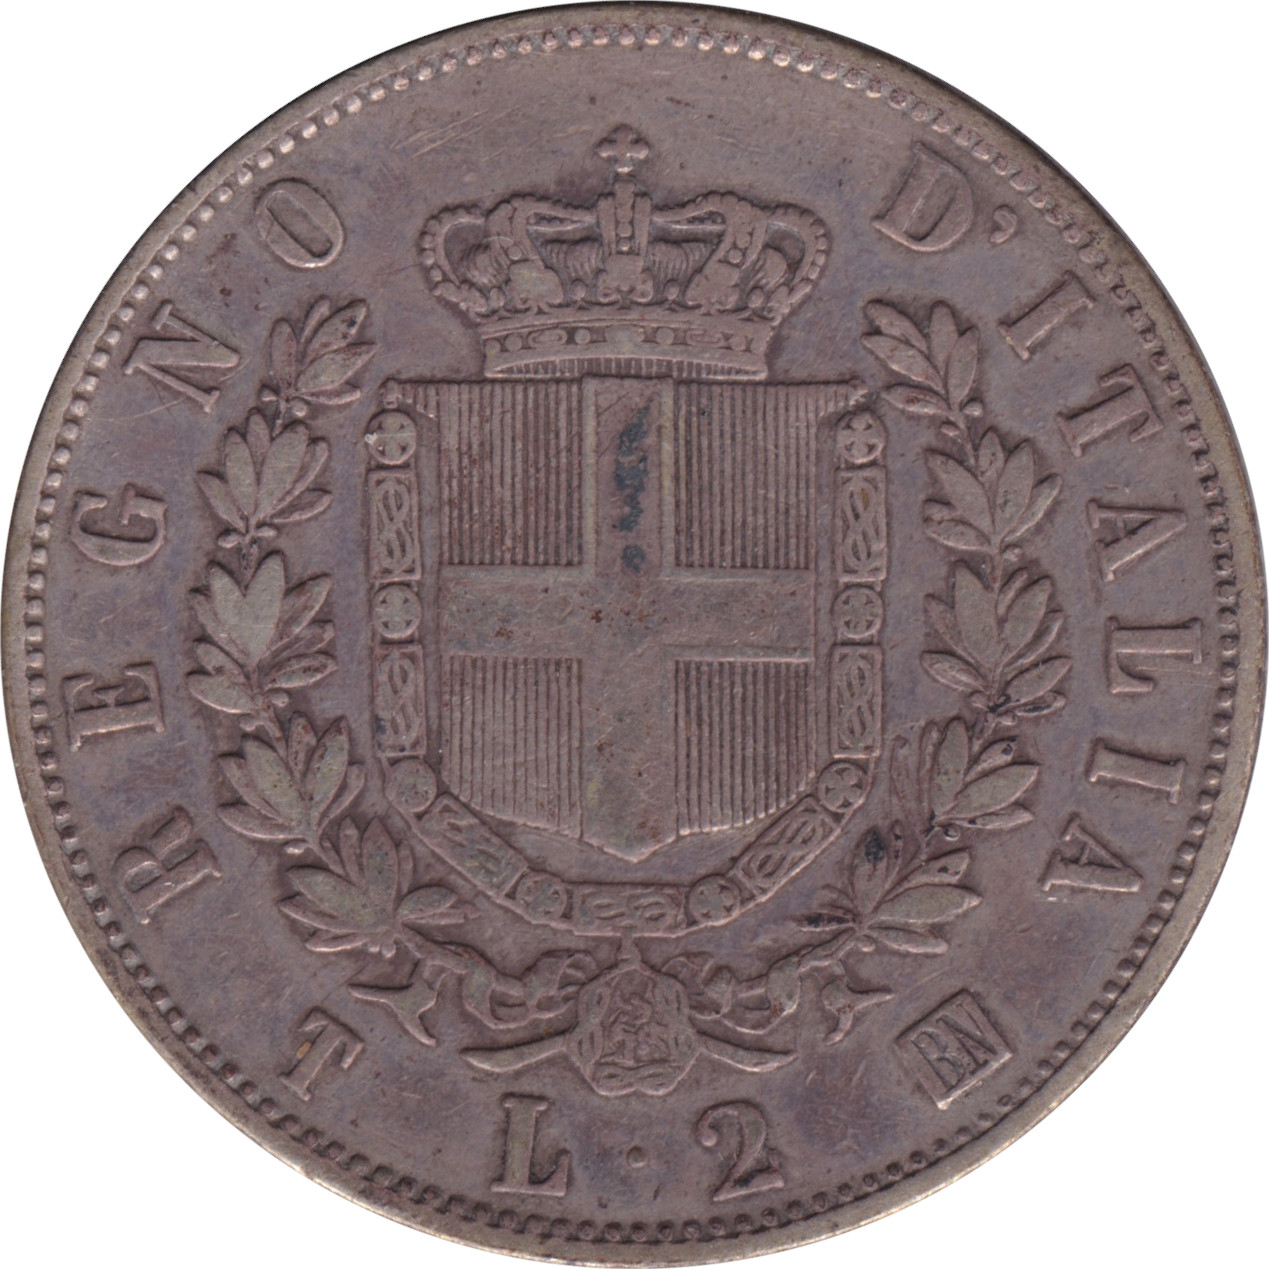 2 lire - Victor Emmanuel II - Shield